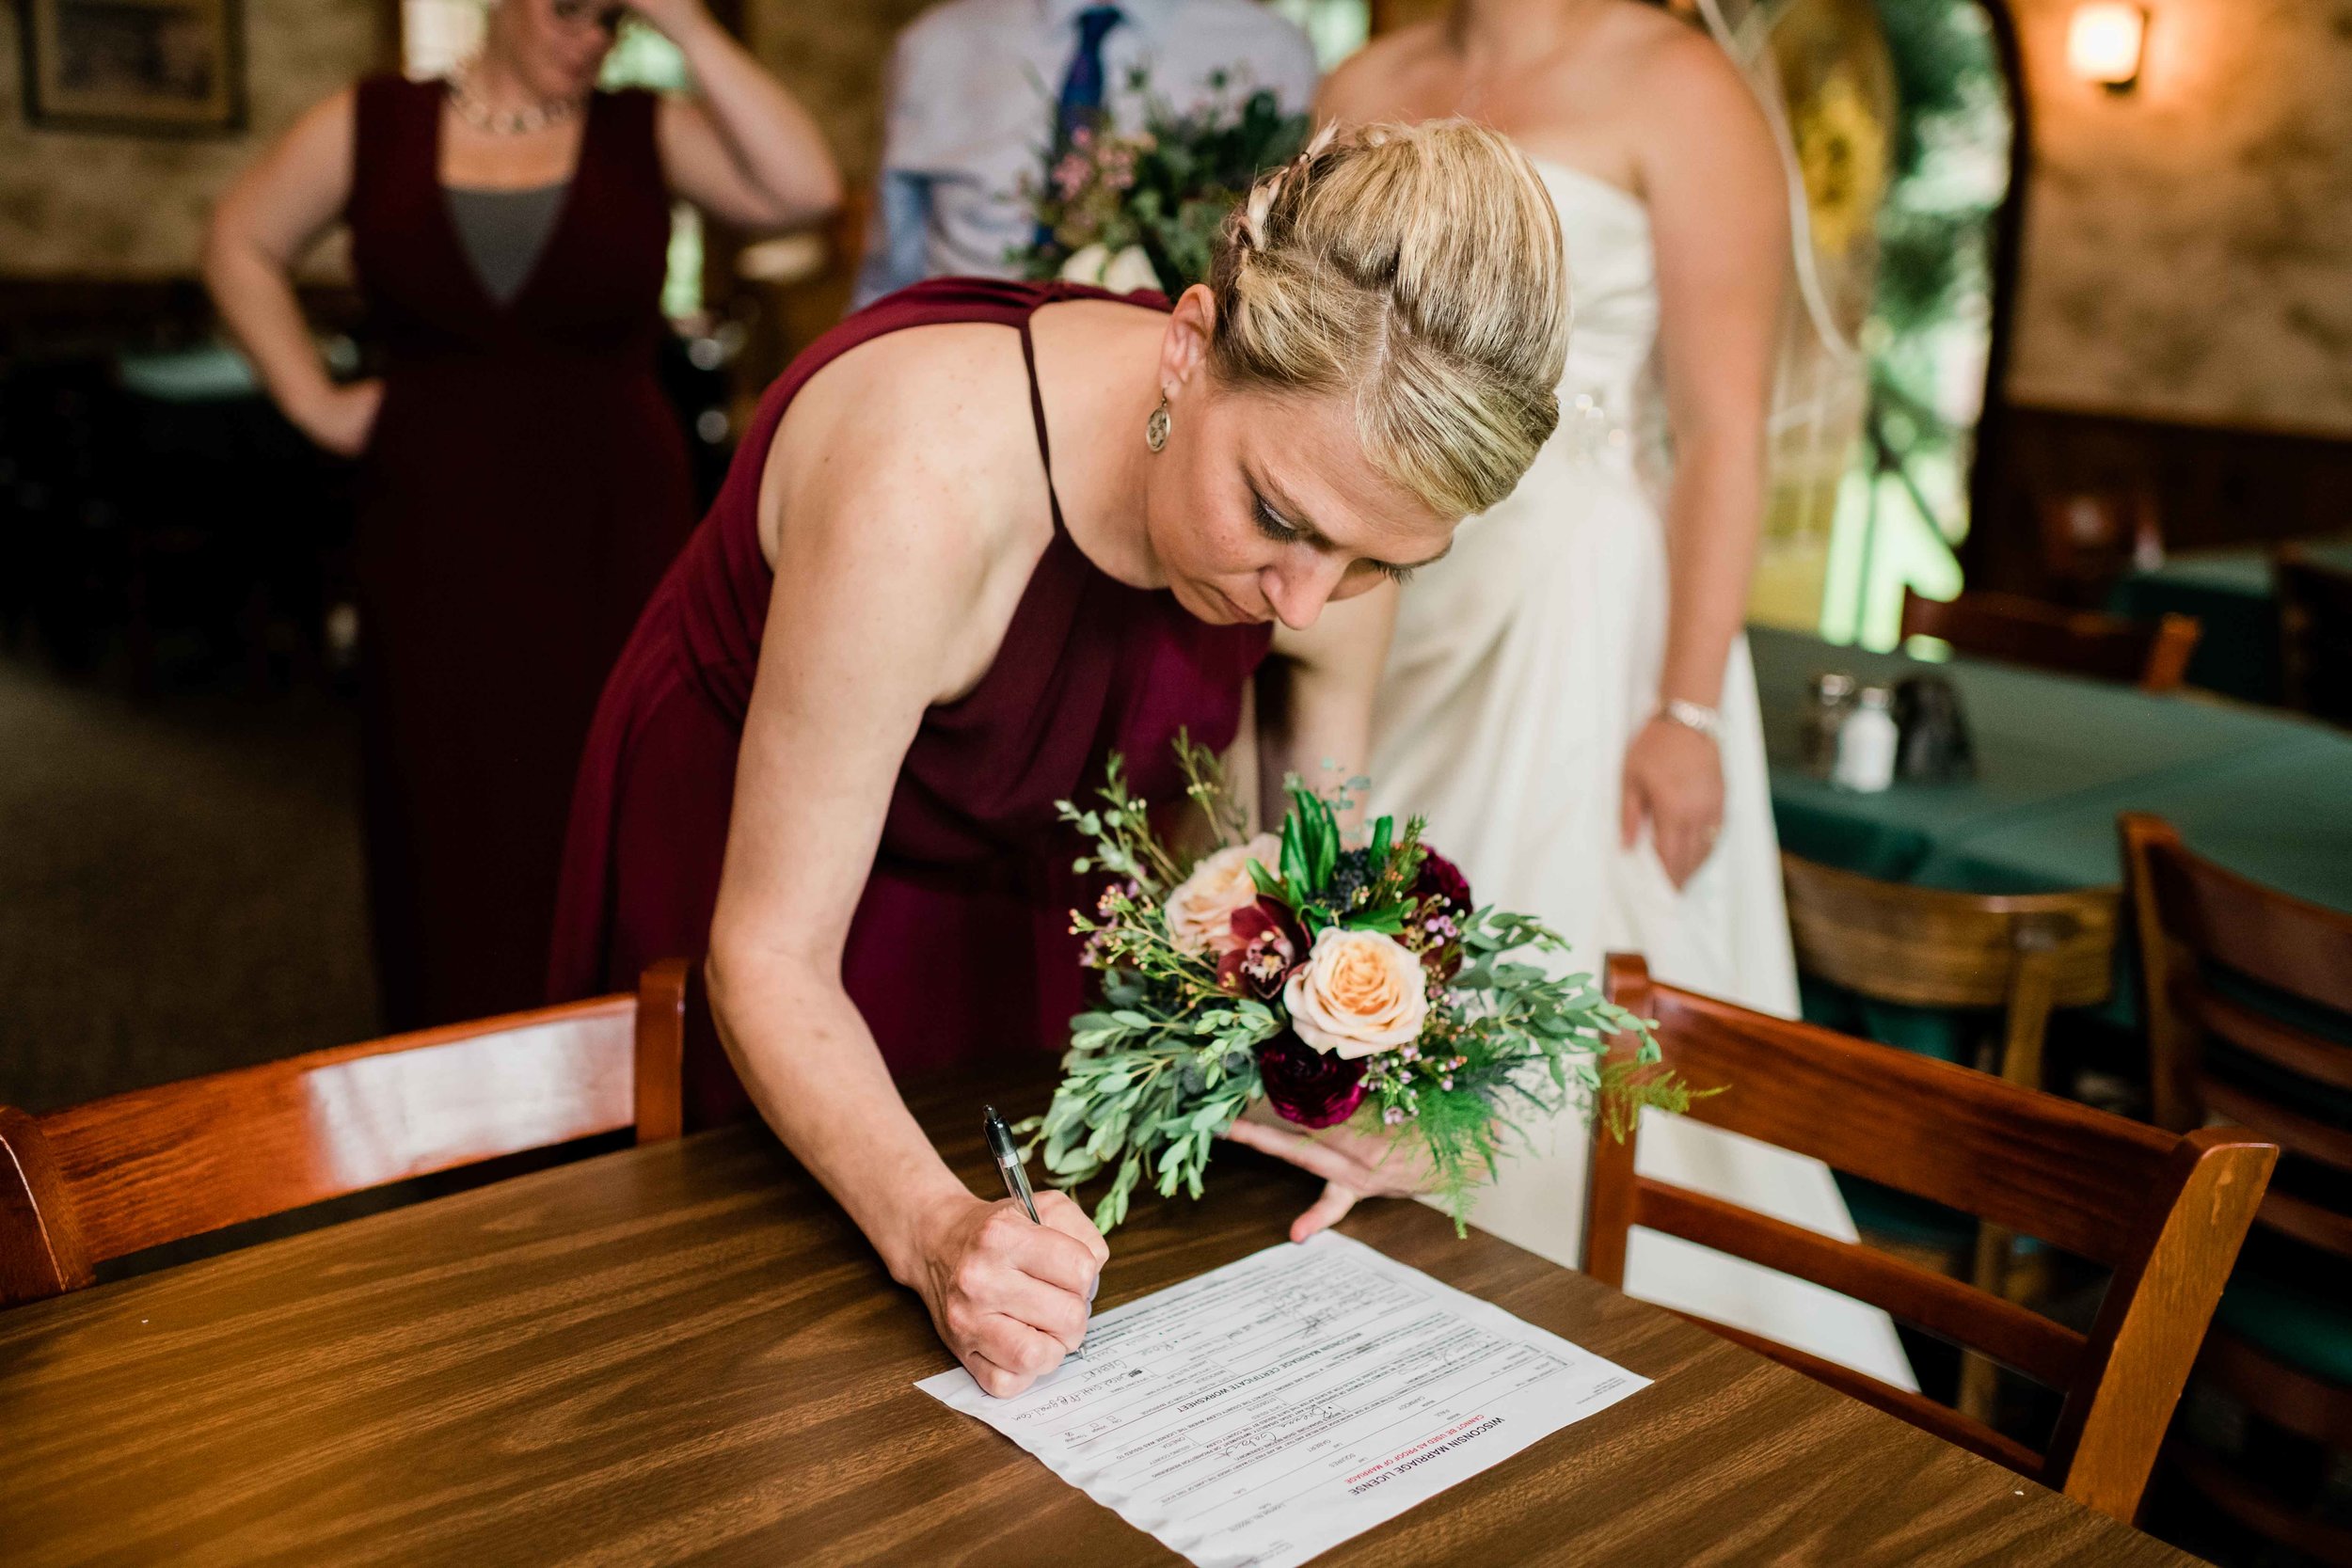 Bridesmaid signs marriage license